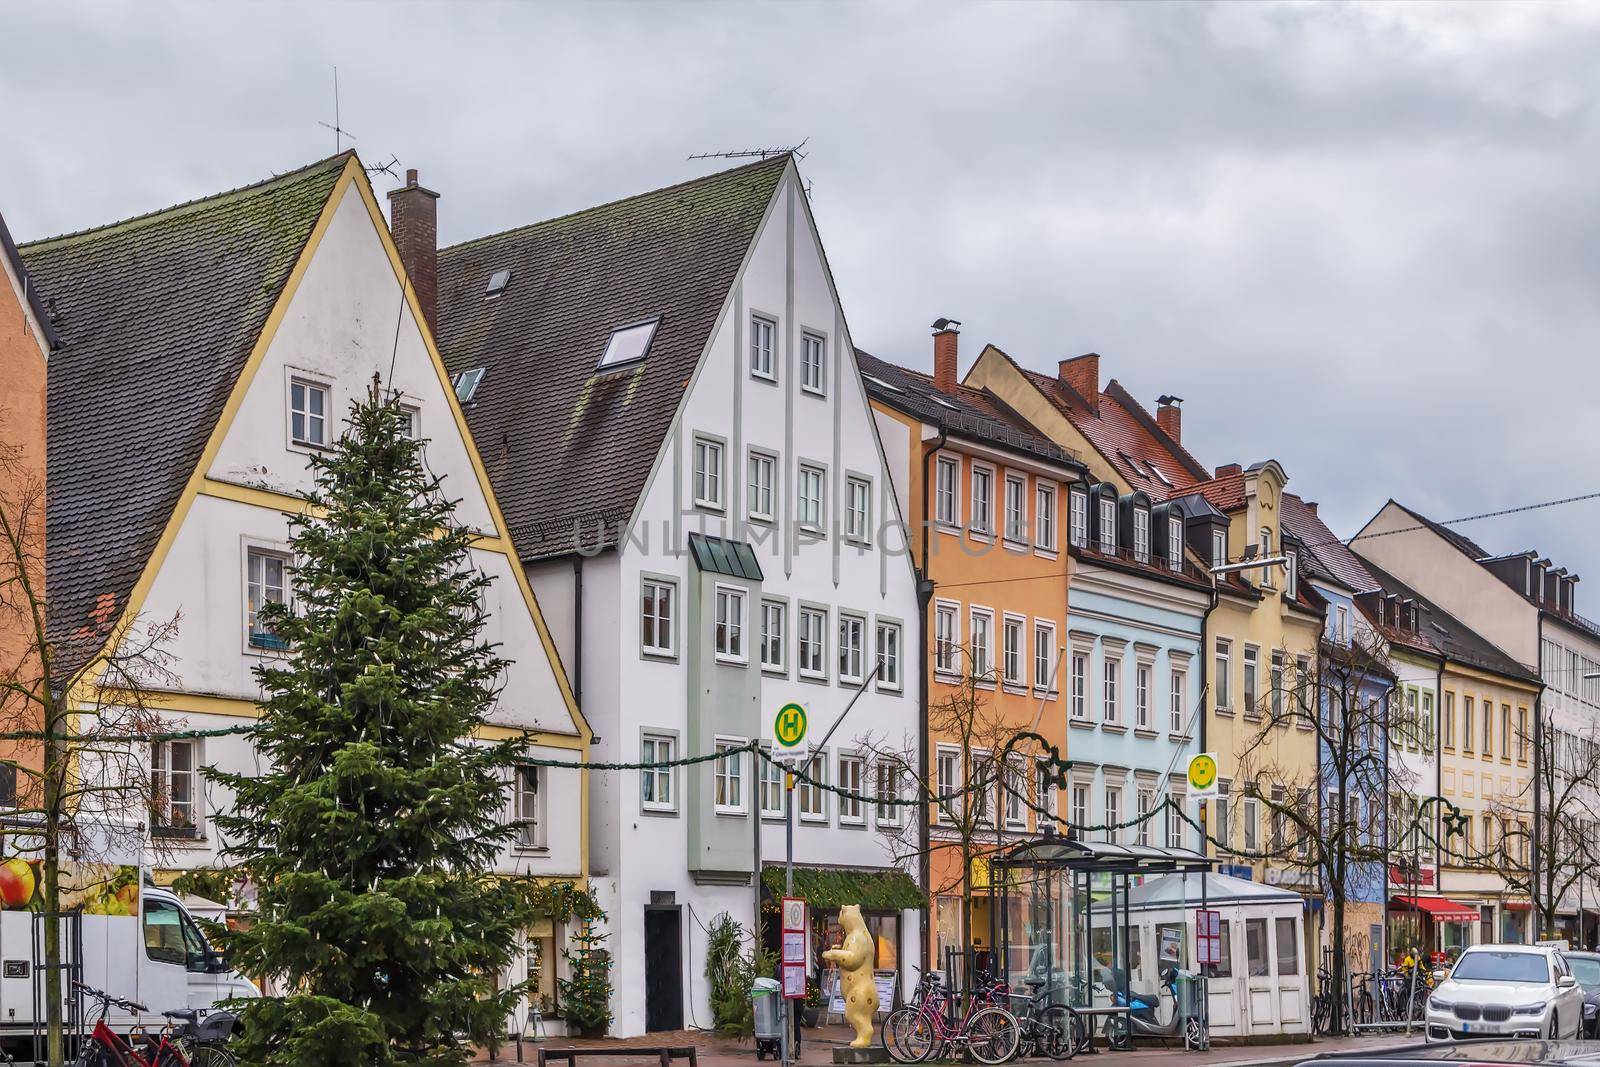 Street in Freising, Germany by borisb17